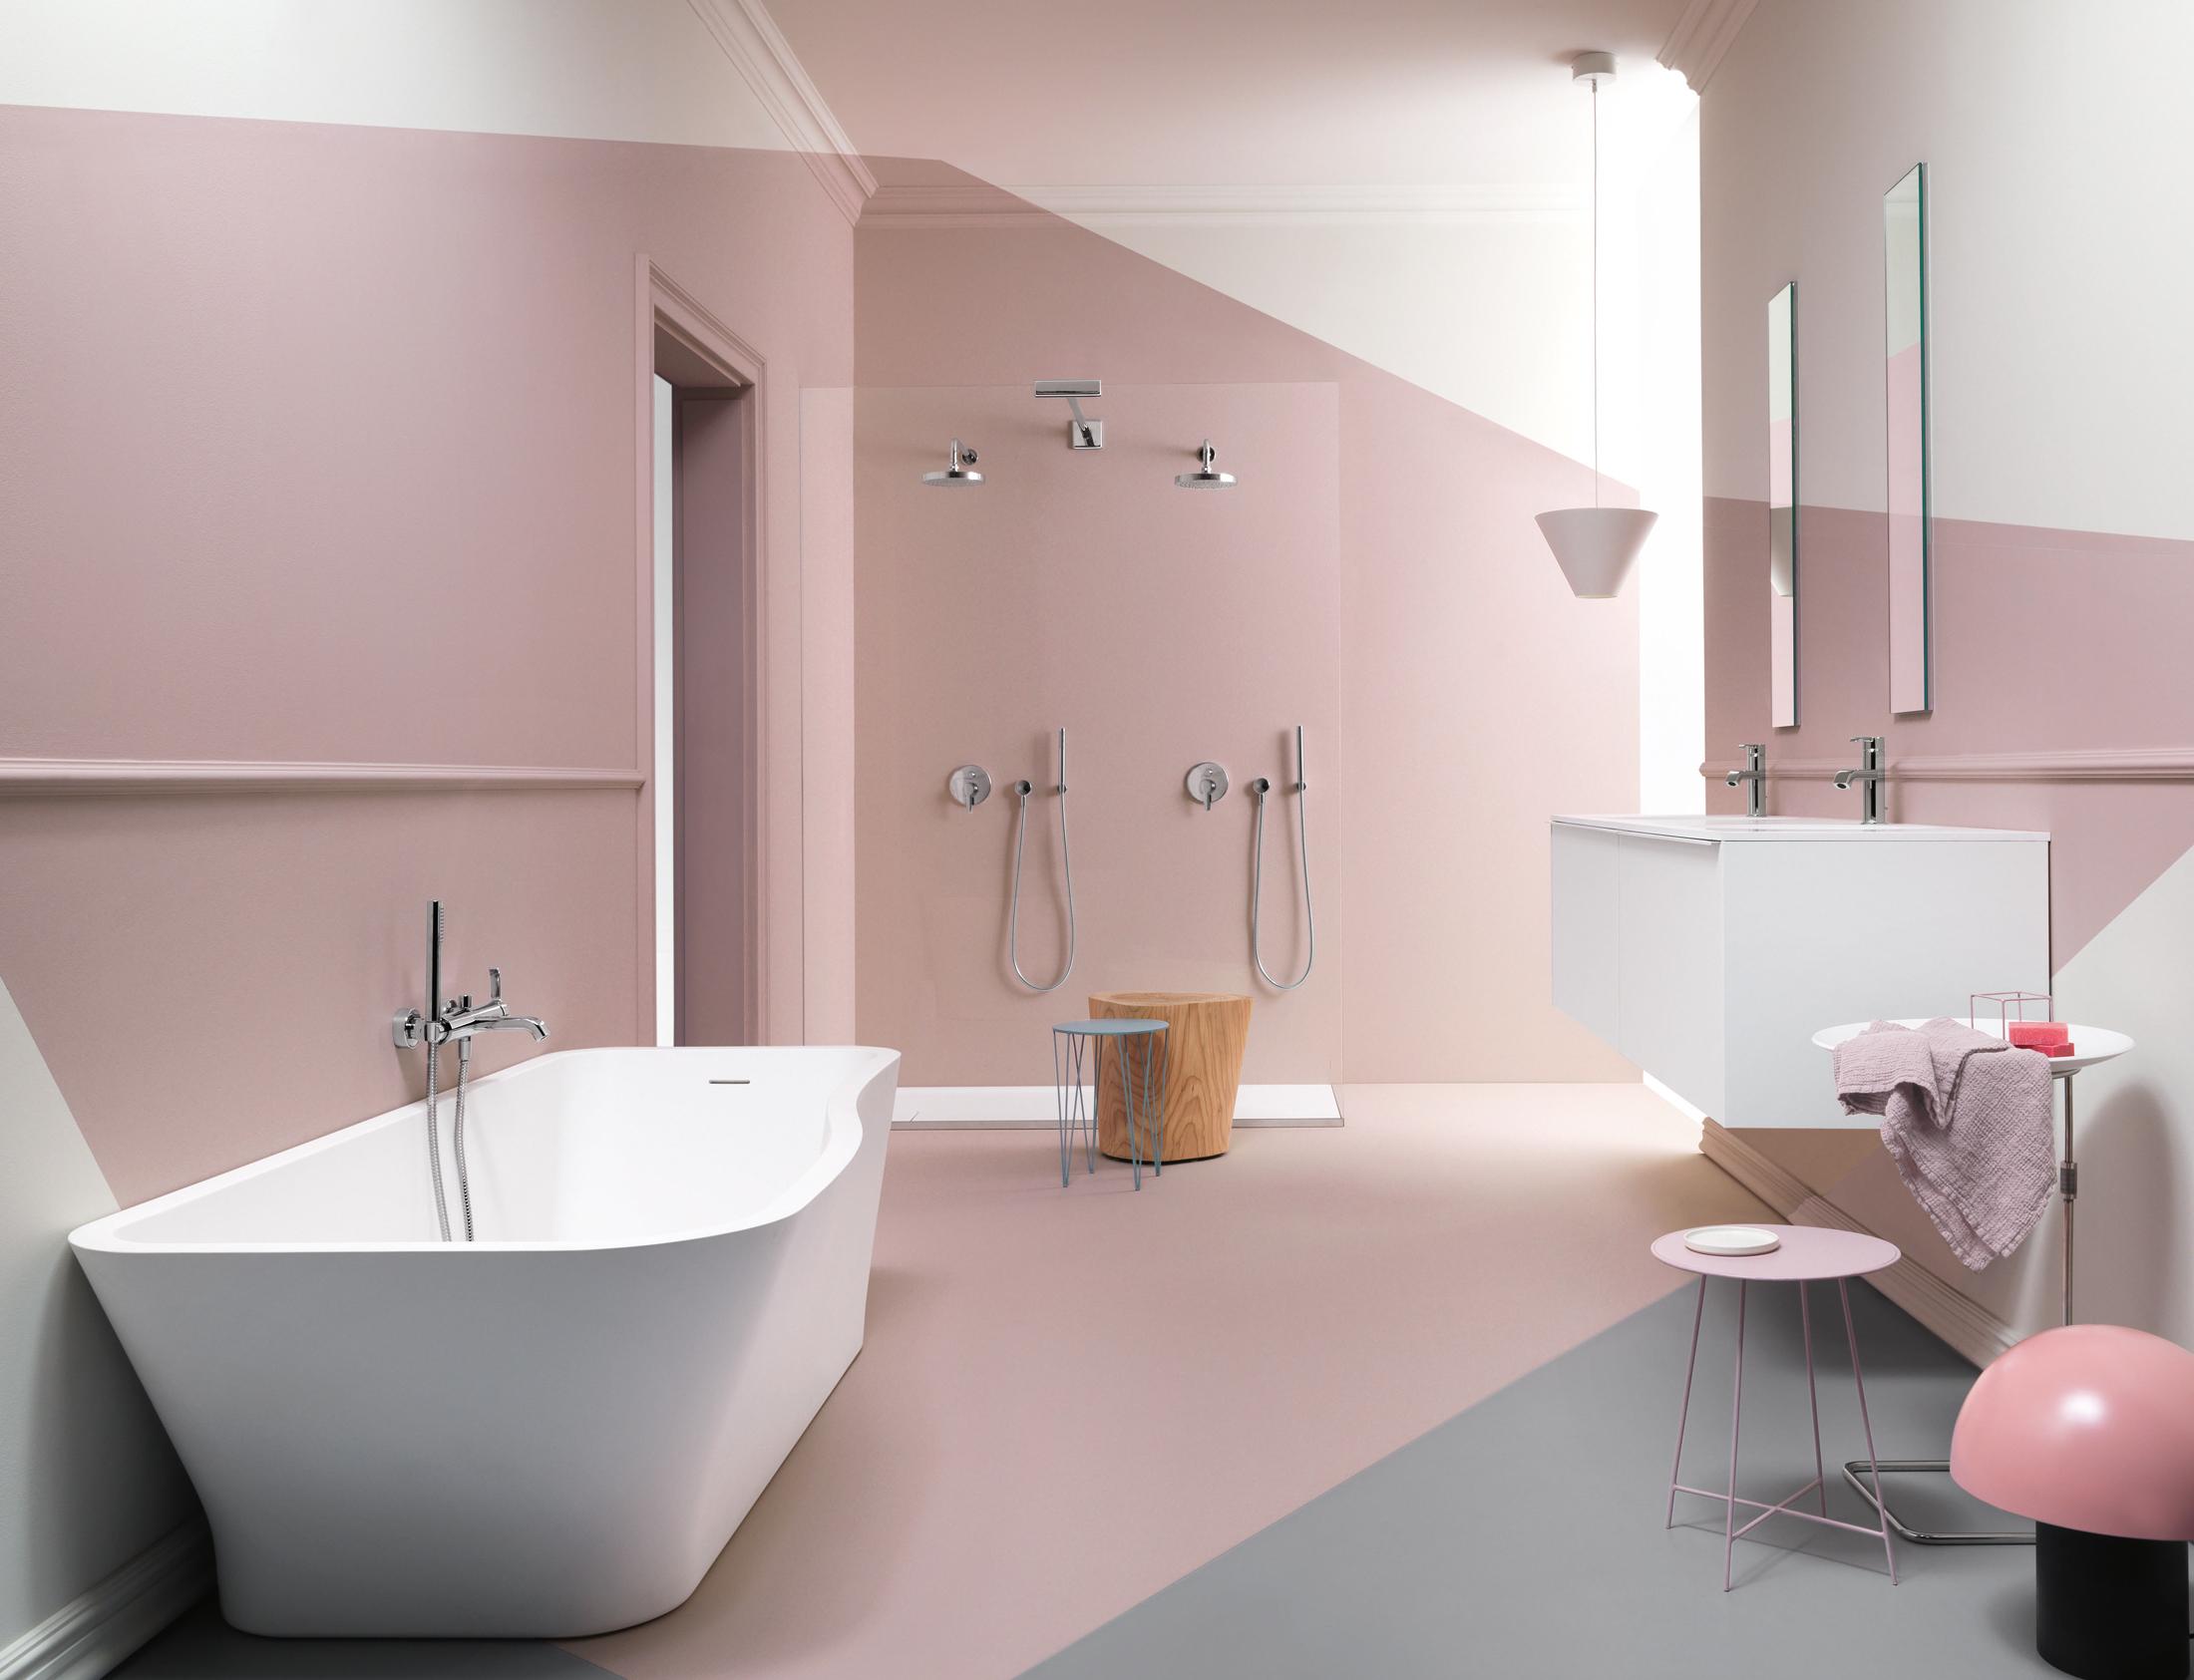 Badezimmergestaltung in zartem Rosé #badewanne #dusche #rosawandfarbe ©Faraway by Zucchetti / Kos